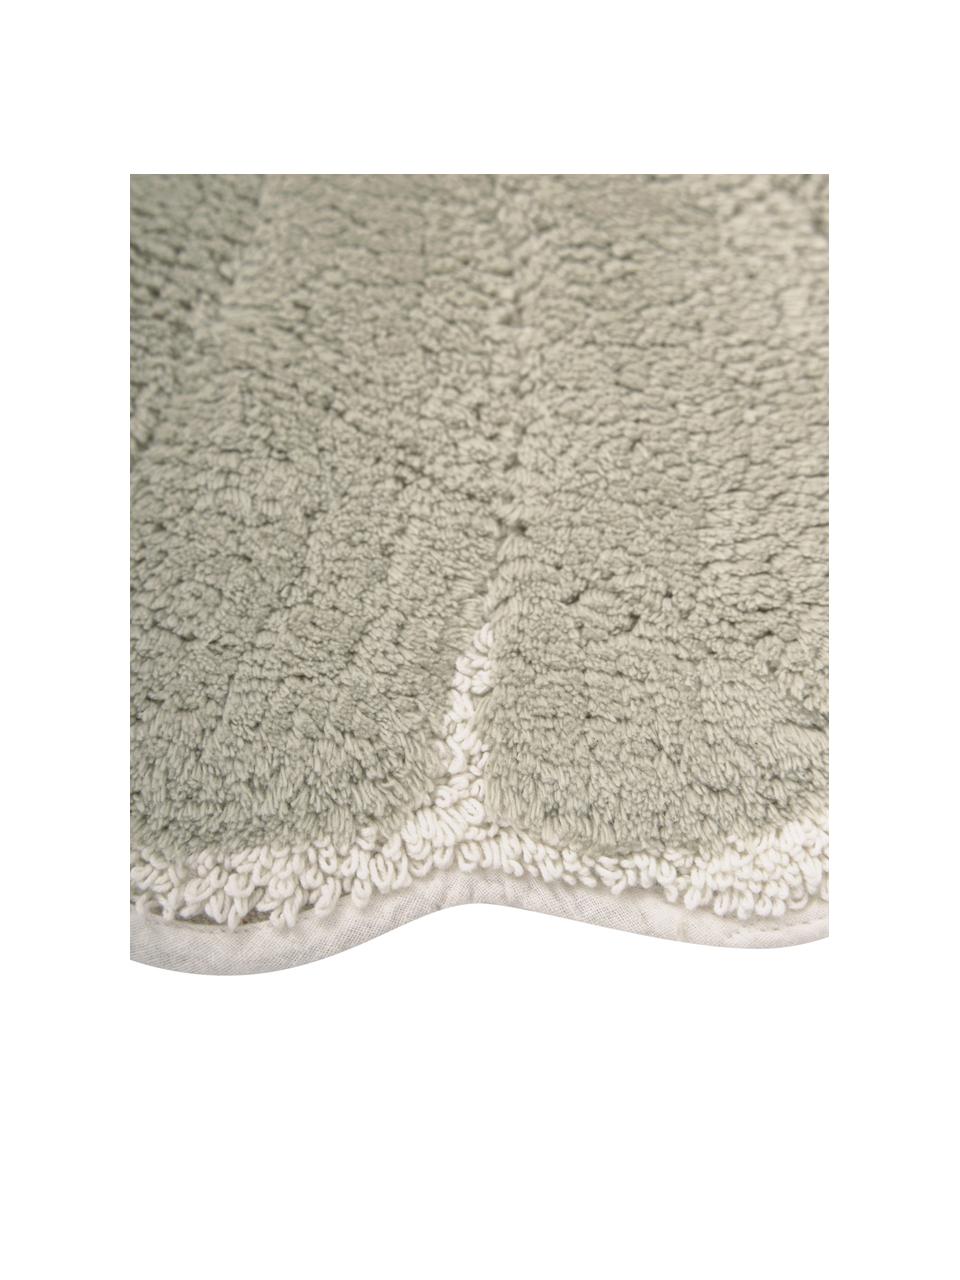 Badmat Soft in lichtgroen van biokatoen, 100% katoen, BCI-gecertificeerd, Lichtgroen, wit, B 70 x L 80 cm